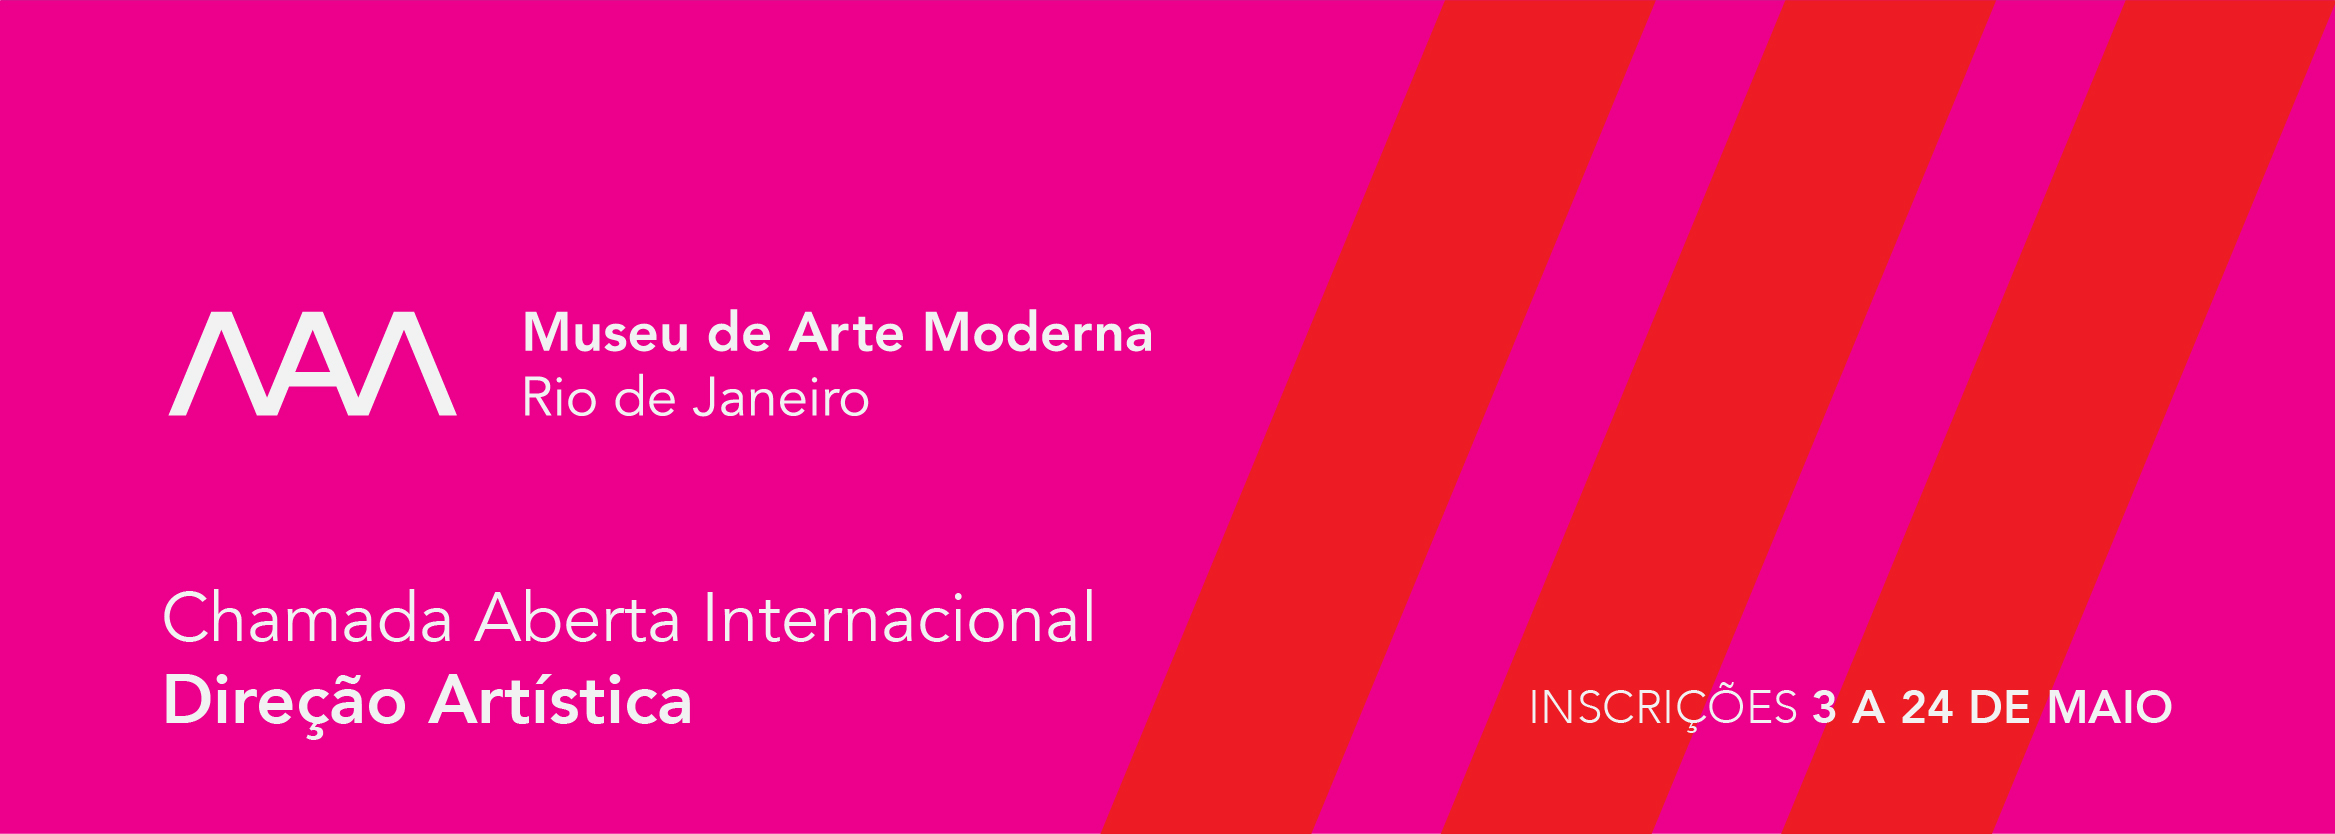 Chamada aberta internacional: Direção Artística do Museu de Arte Moderna do Rio de Janeiro